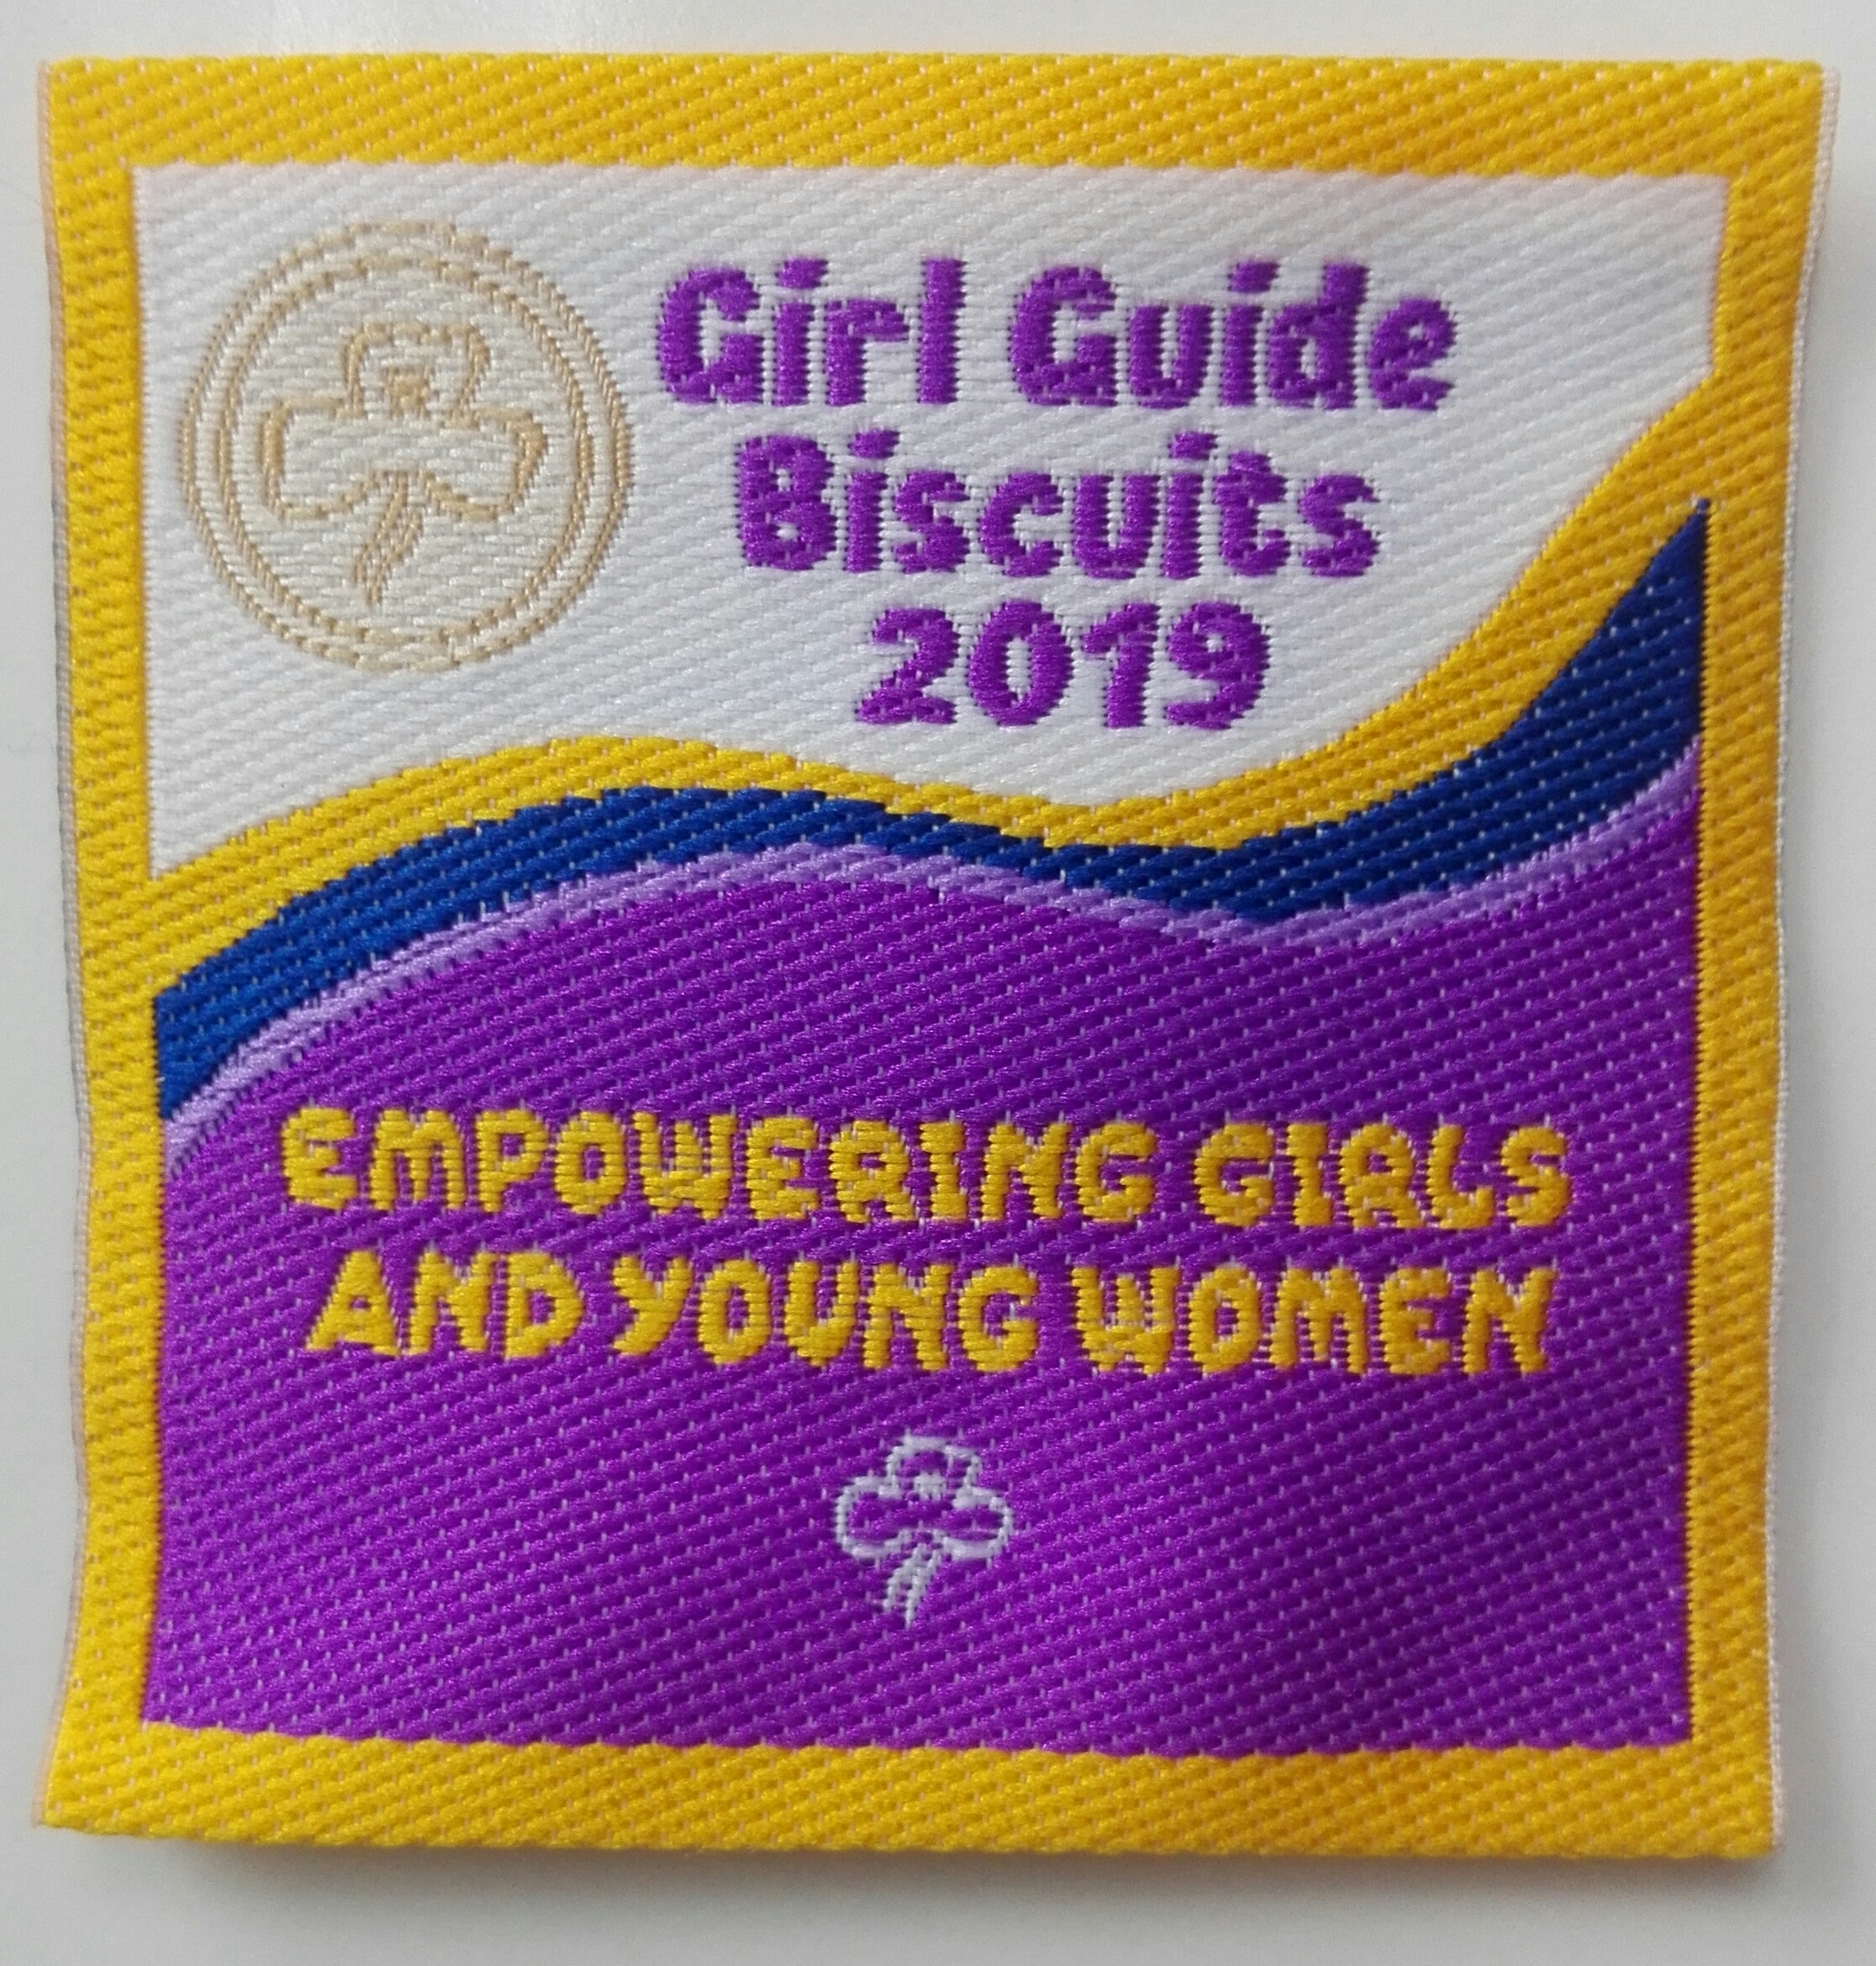 Biscuit Badge 2019